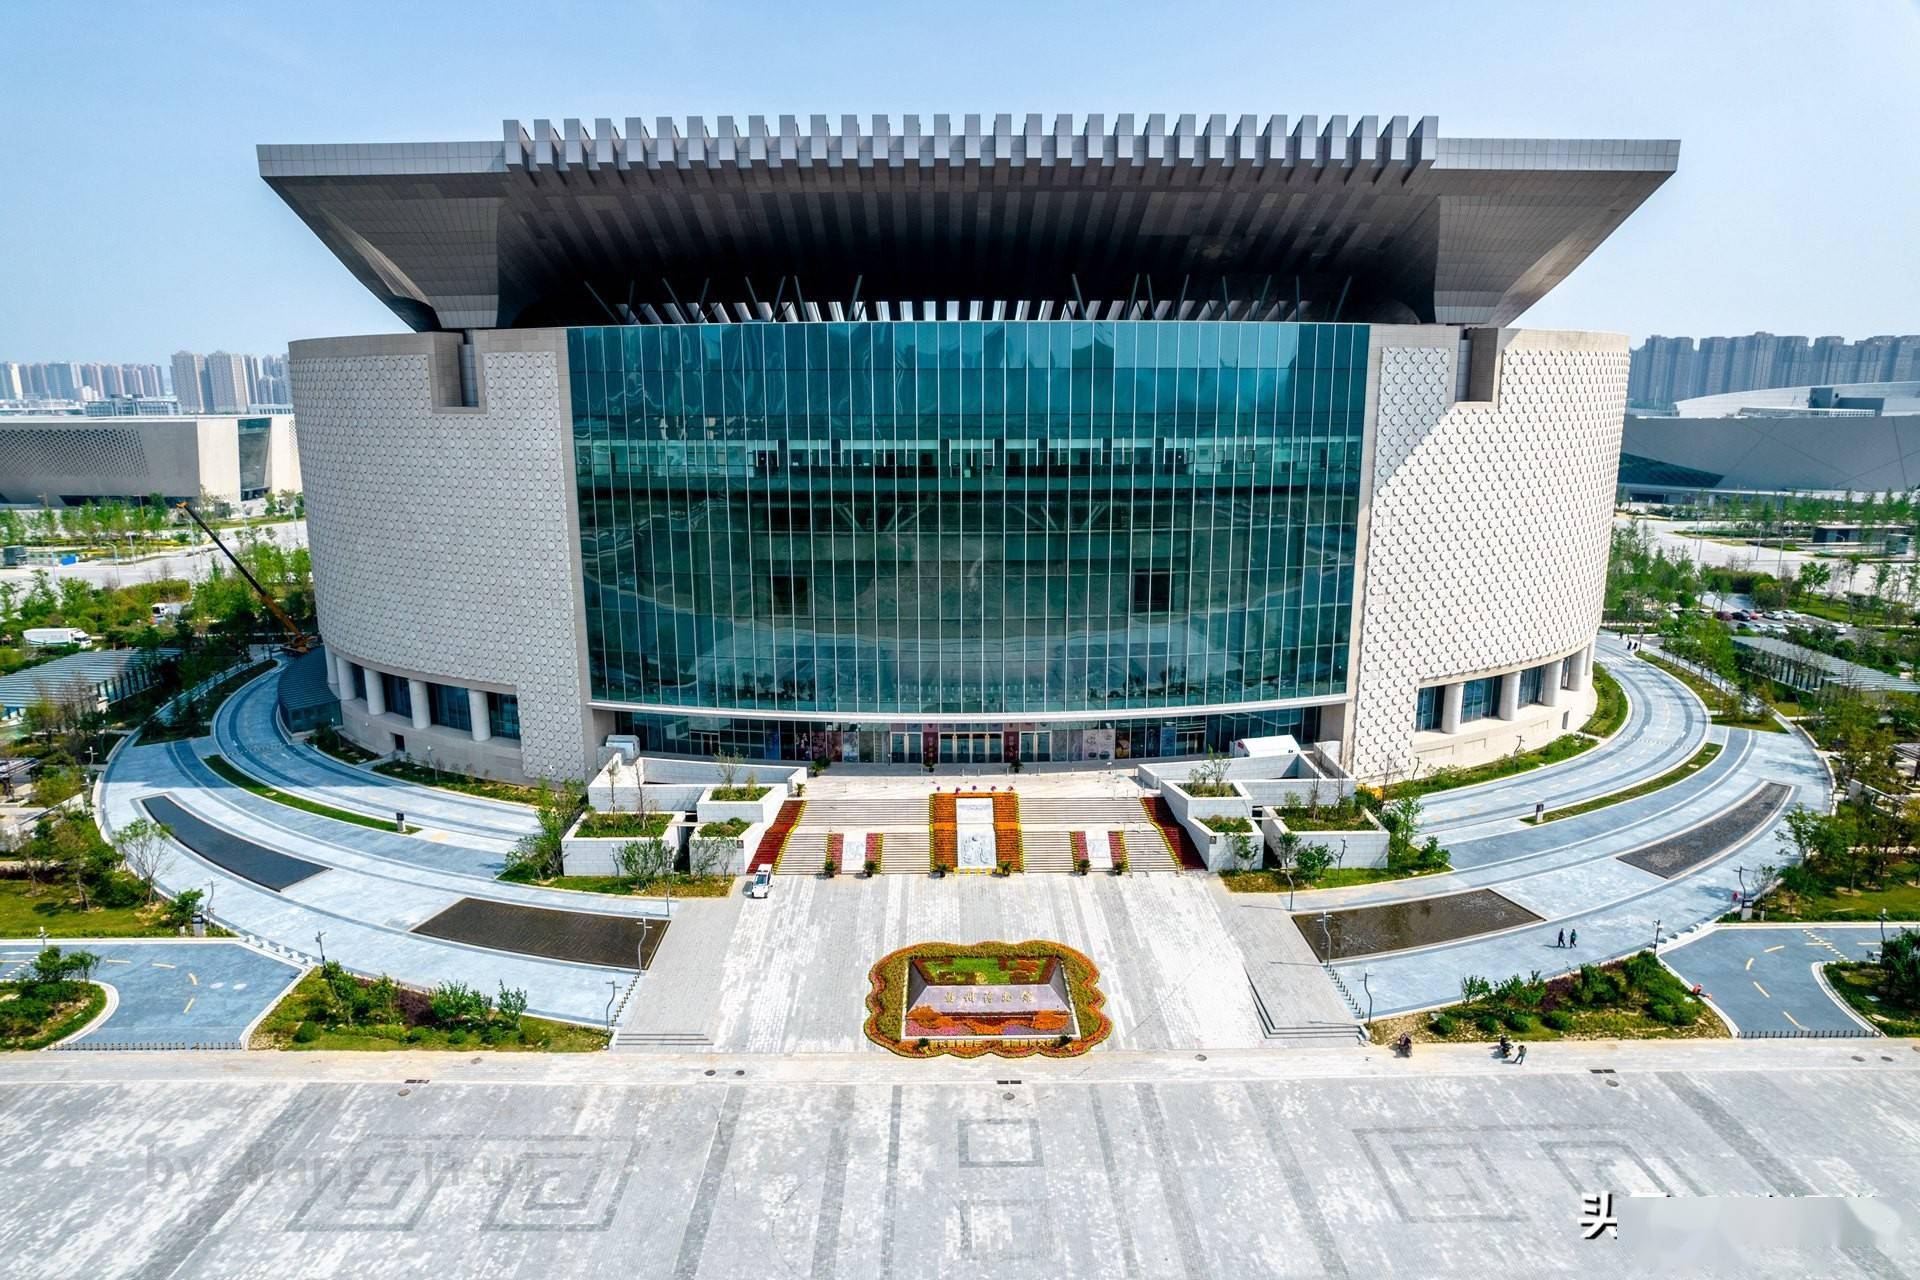 中国单体面积最大的博物馆:郑州博物馆新馆,djiair2s无人机航拍